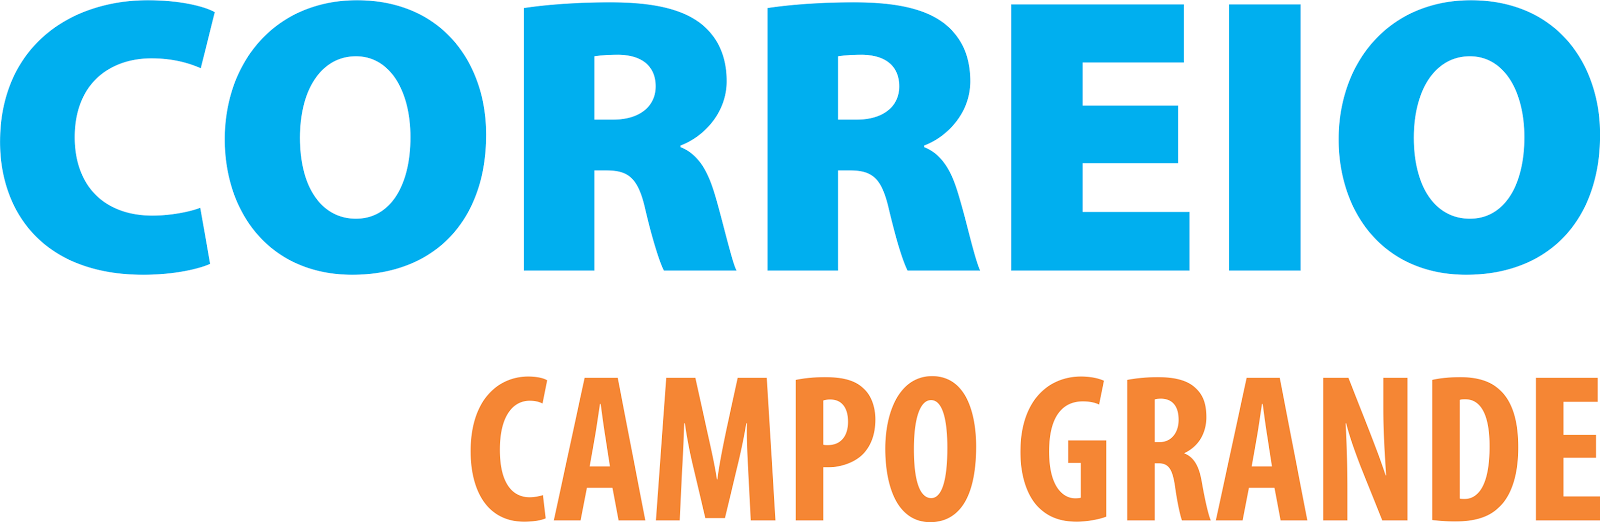 CORREIO DE CAMPO GRANDE